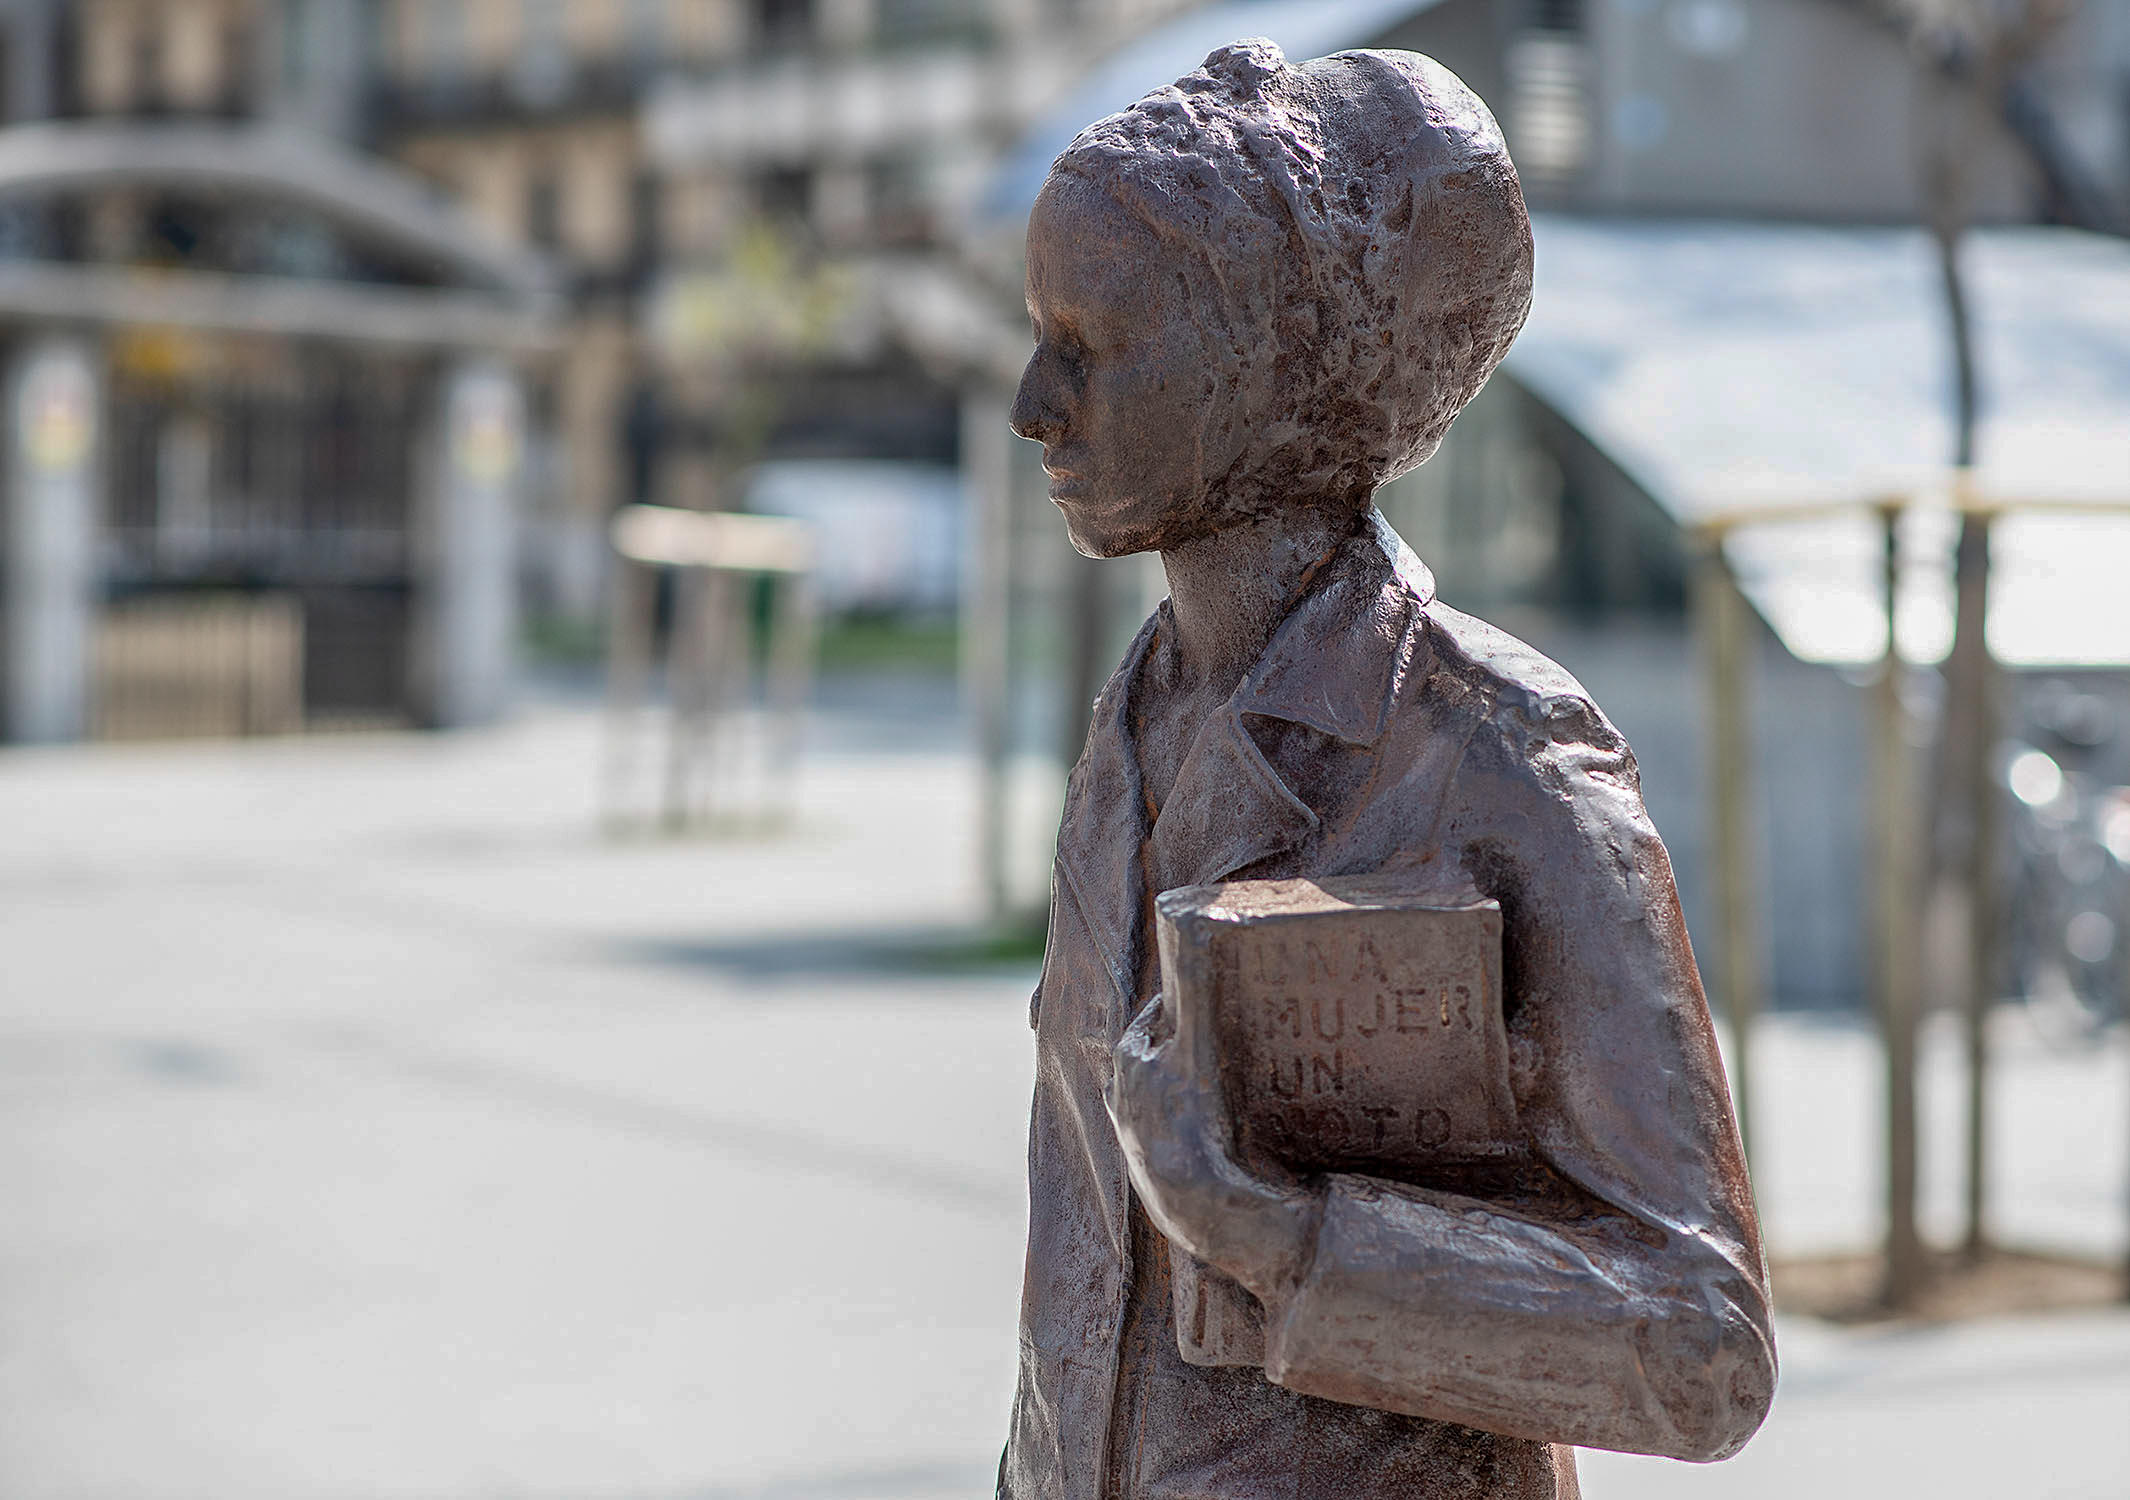 Escultura en hierro de una mujer con un libro bajo el brazo titulado una mujer, un voto